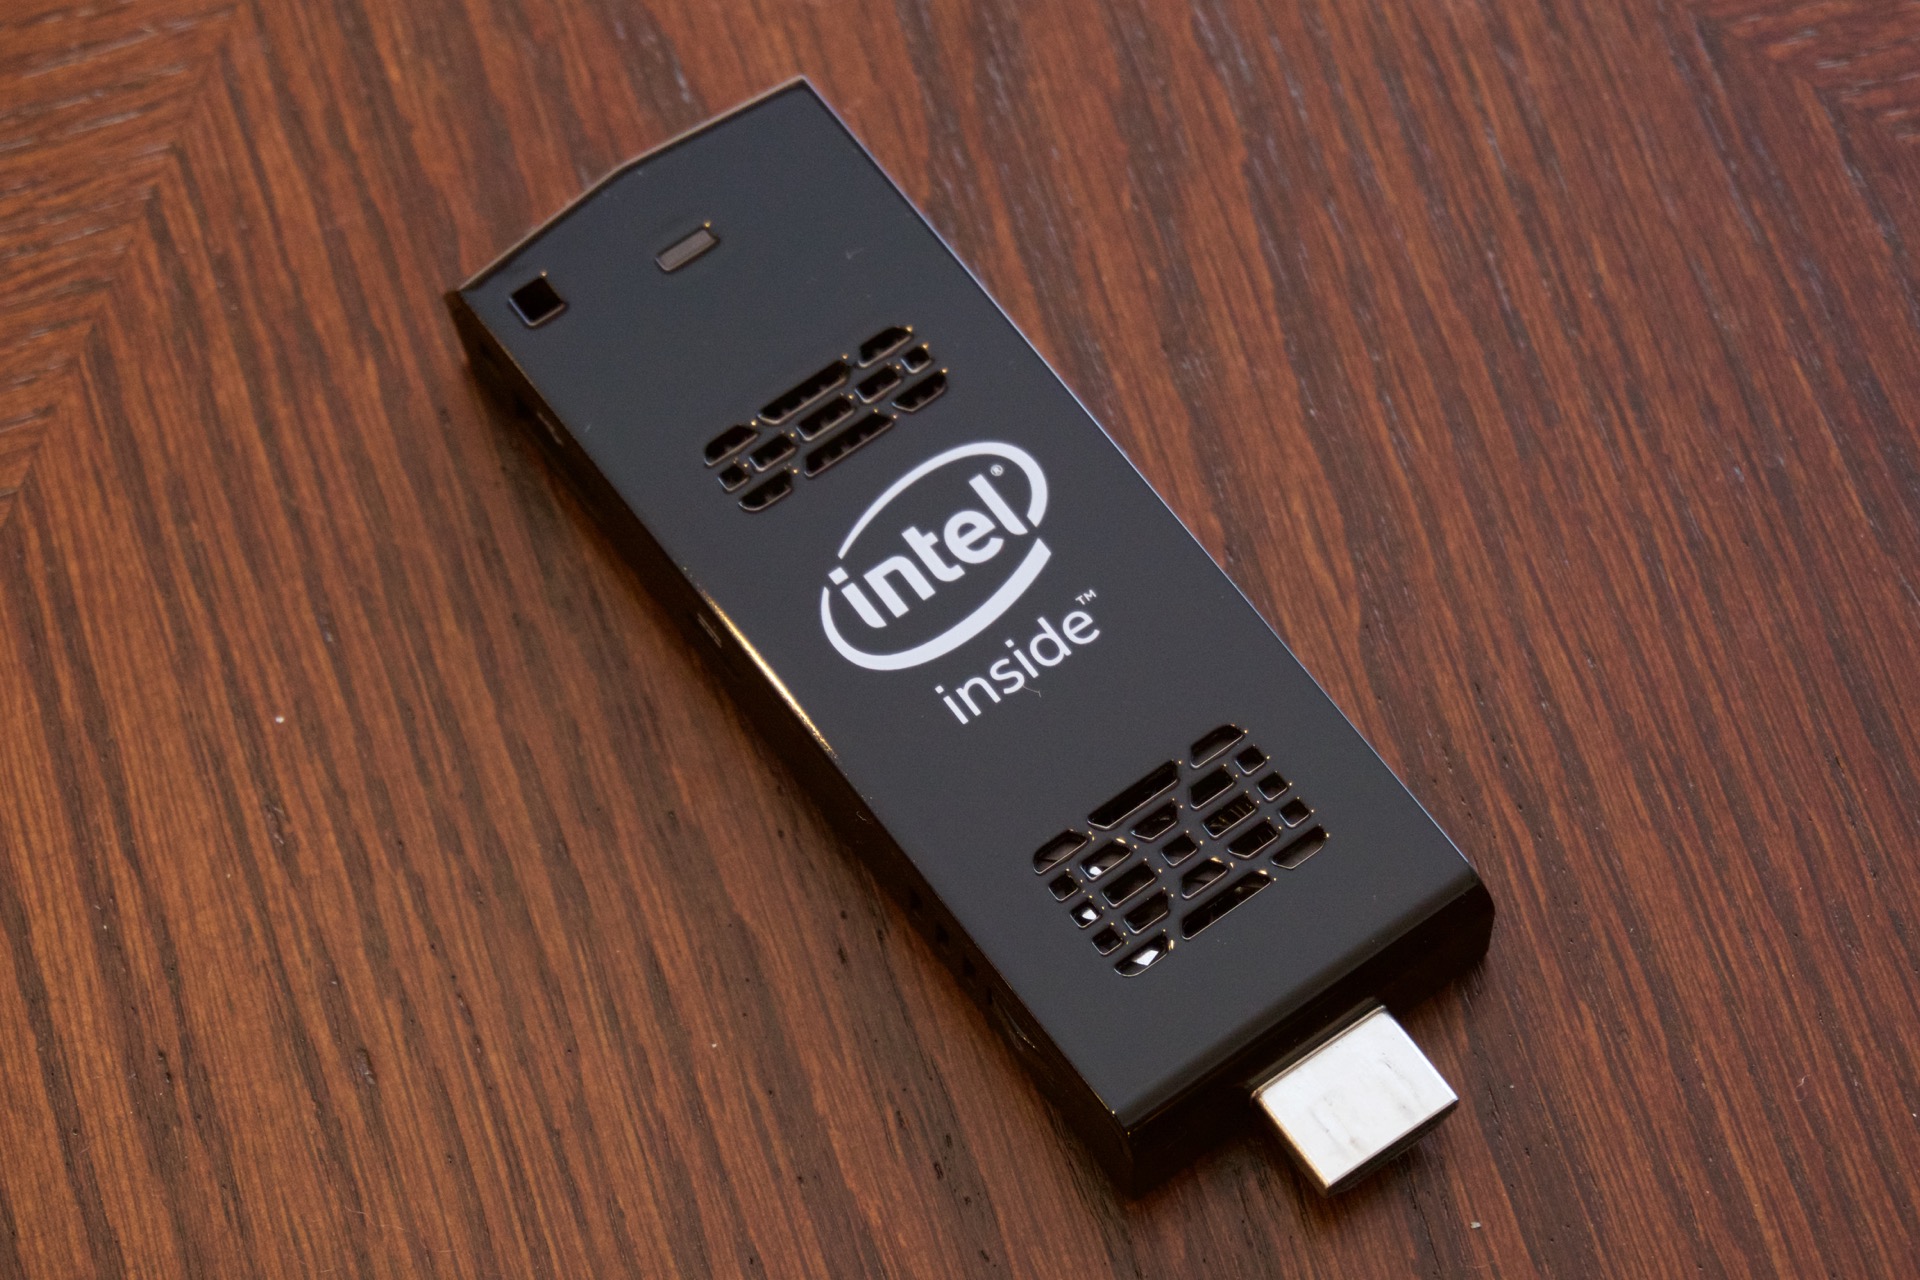 Verstelbaar Maak een sneeuwpop stel je voor Intel's Compute Stick: A full PC that's tiny in size (and performance) |  Ars Technica